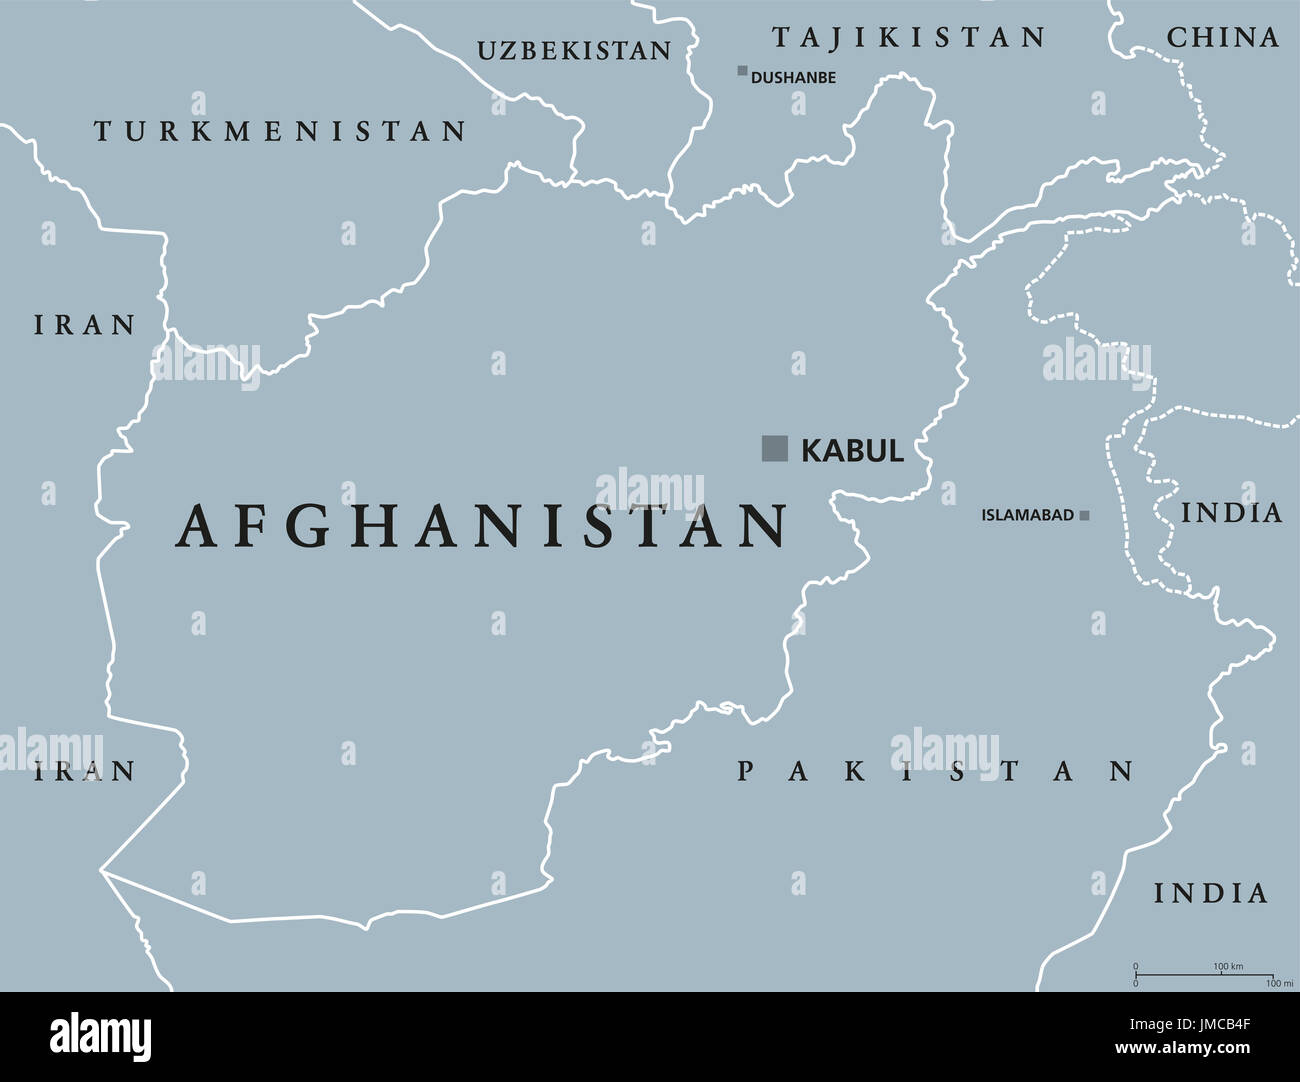 Mapa político de Afganistán con la capital, Kabul, y las fronteras. República Islámica y el país sin litoral en el Asia Central y Meridional. Ilustración de color gris. Foto de stock